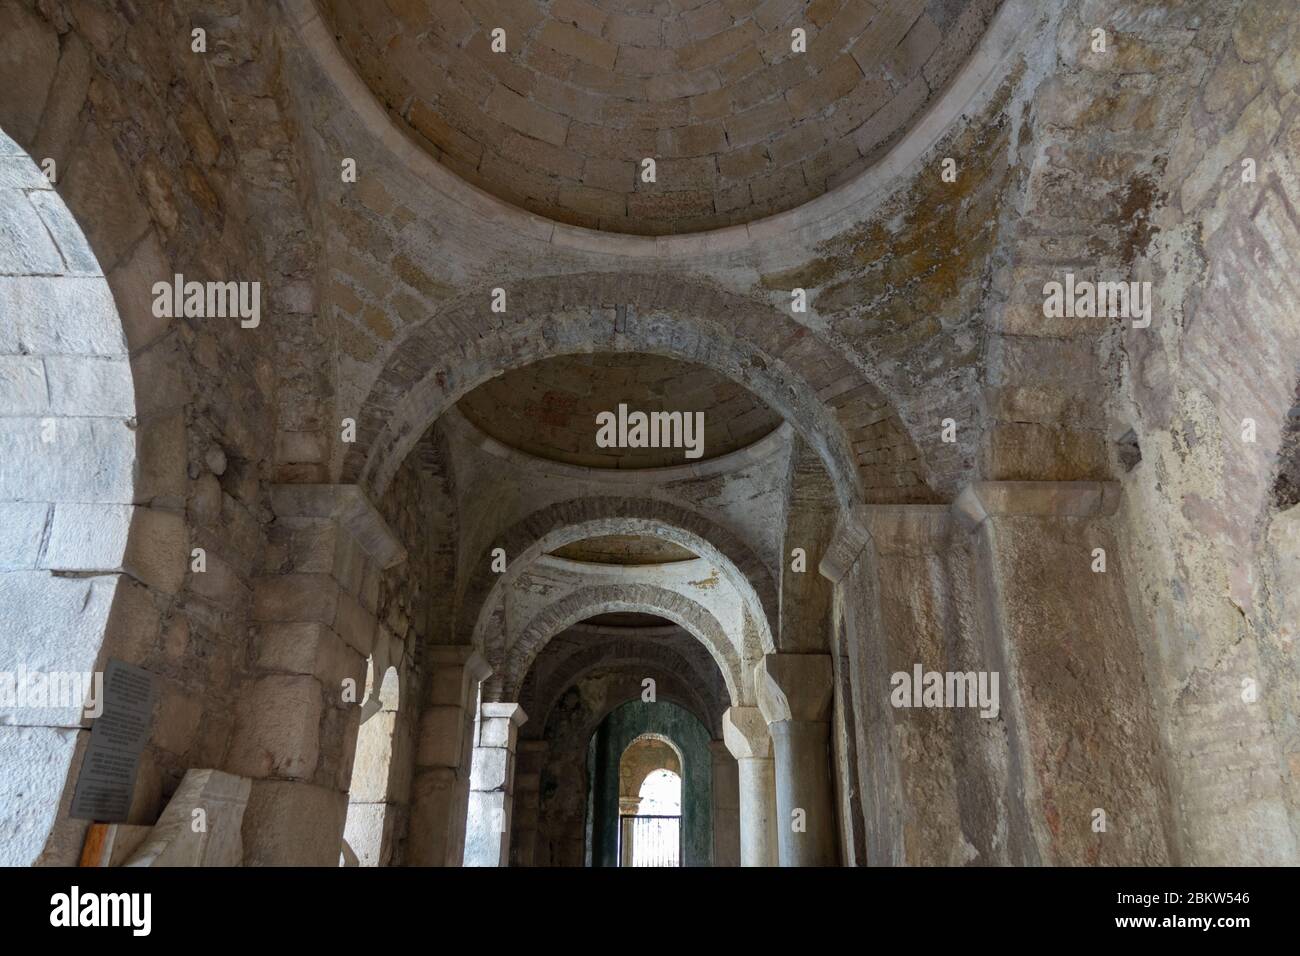 Interior de la antigua iglesia bizantina griega de San Nicolás el Wonderworker situado en la moderna ciudad de Demre, provincia de Antalya, Turquía Foto de stock